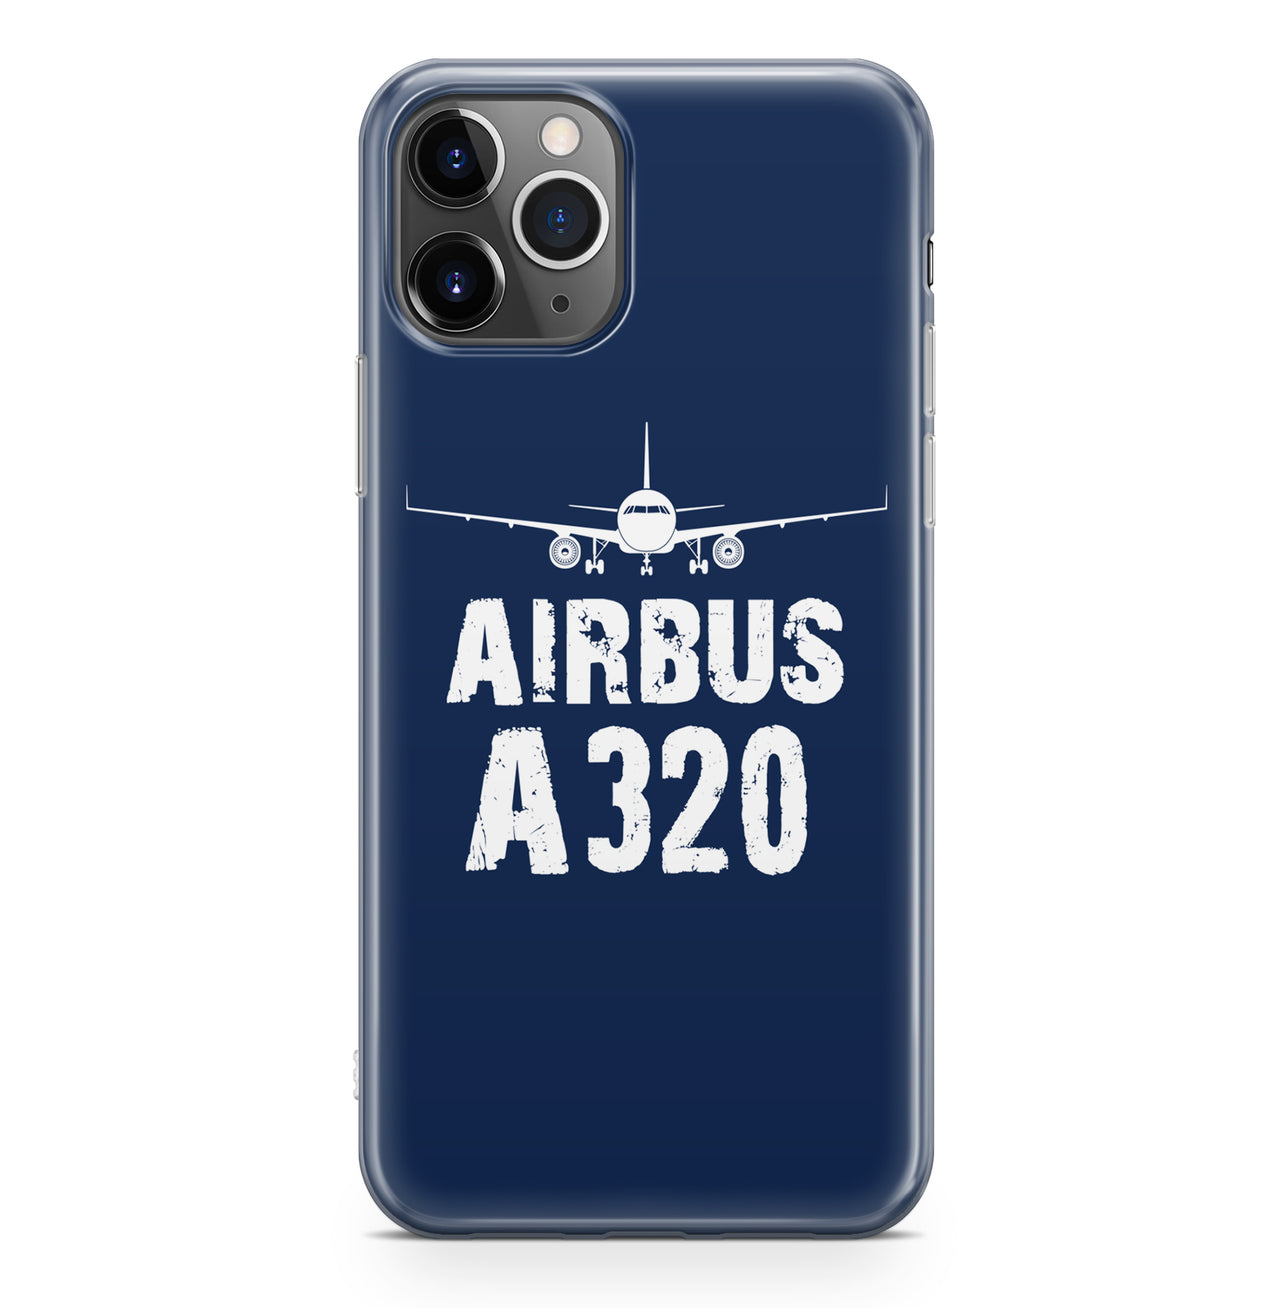 Airbus A320 & Plane Designed iPhone Cases